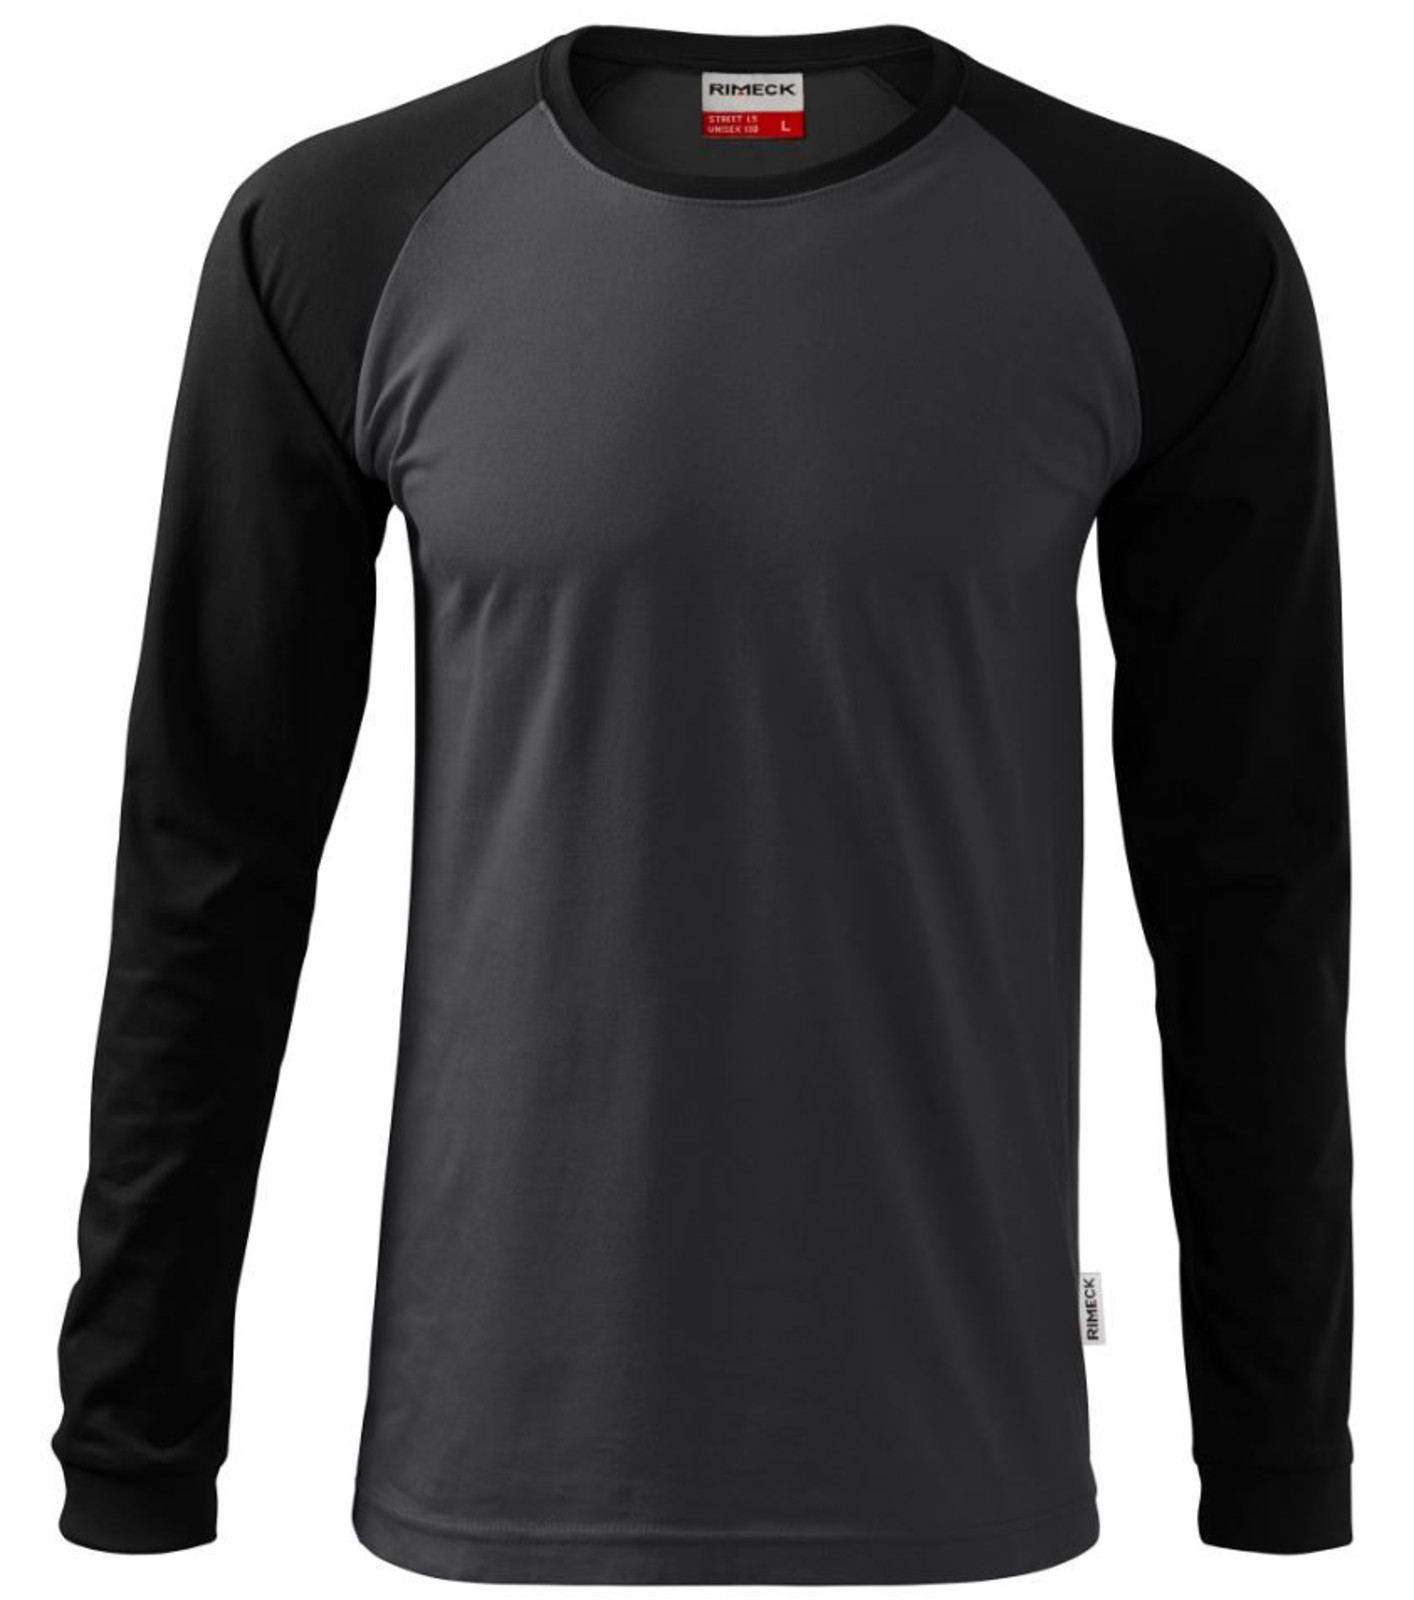 Unisex tričko s dlhým rukávom Rimeck Street LS 130 - veľkosť: XXL, farba: sivá/čierna